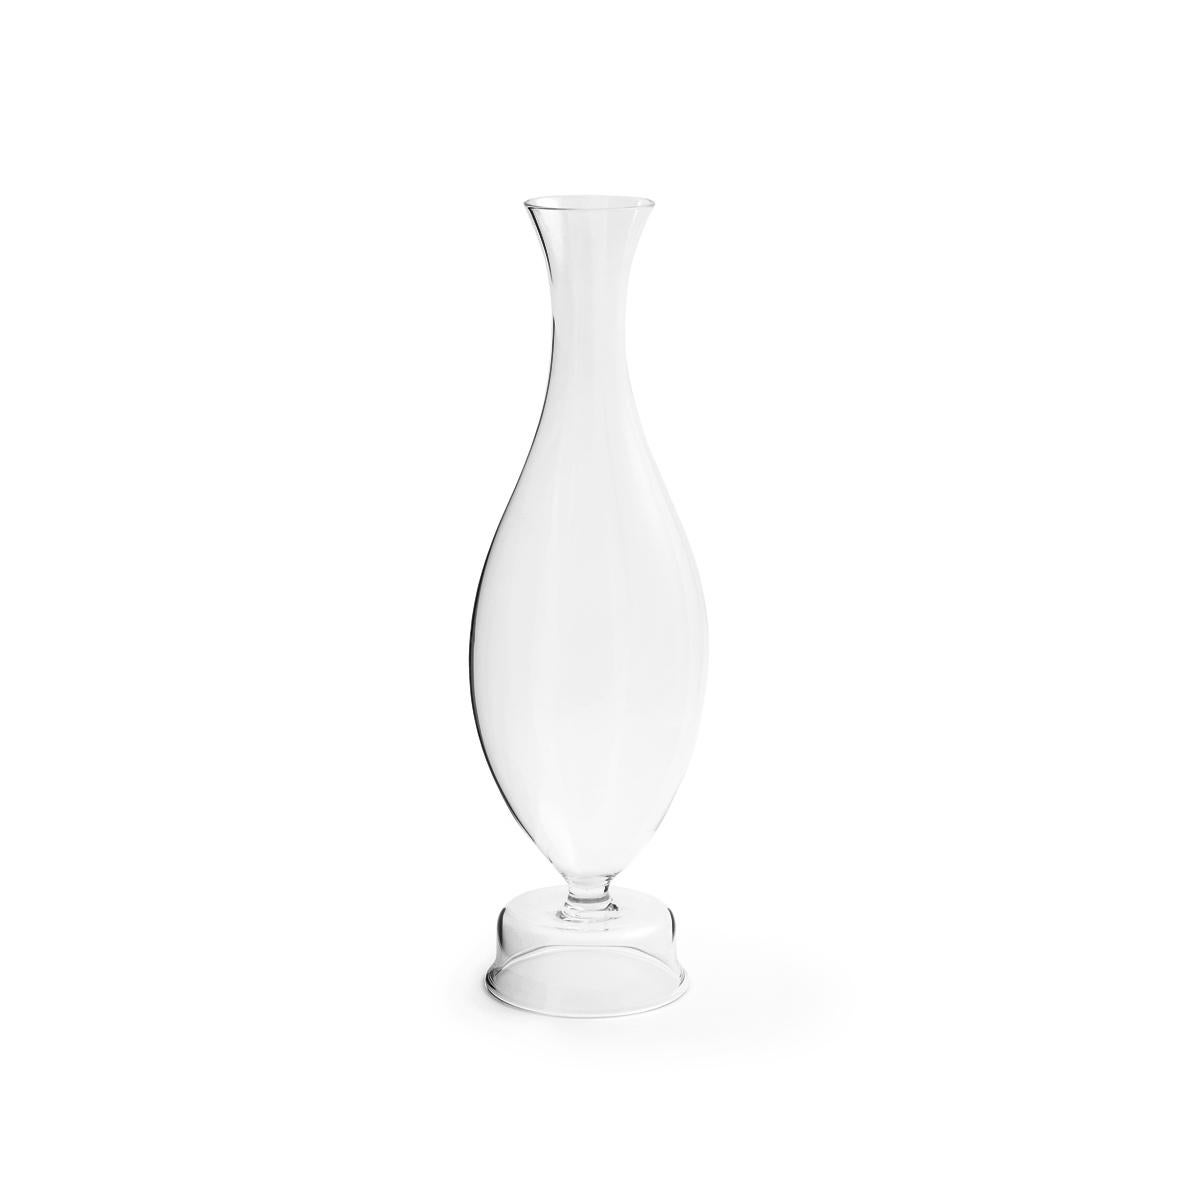 Pims ist eine mundgeblasene Borosilikatglasflasche mit einer schlanken Form, ein kleines Meisterwerk, bei dem das handwerkliche Können von Paola C. auf das Design von Aldo Cibic trifft. Pims erinnert an die Glasobjekte, die auf dem Stillleben zu